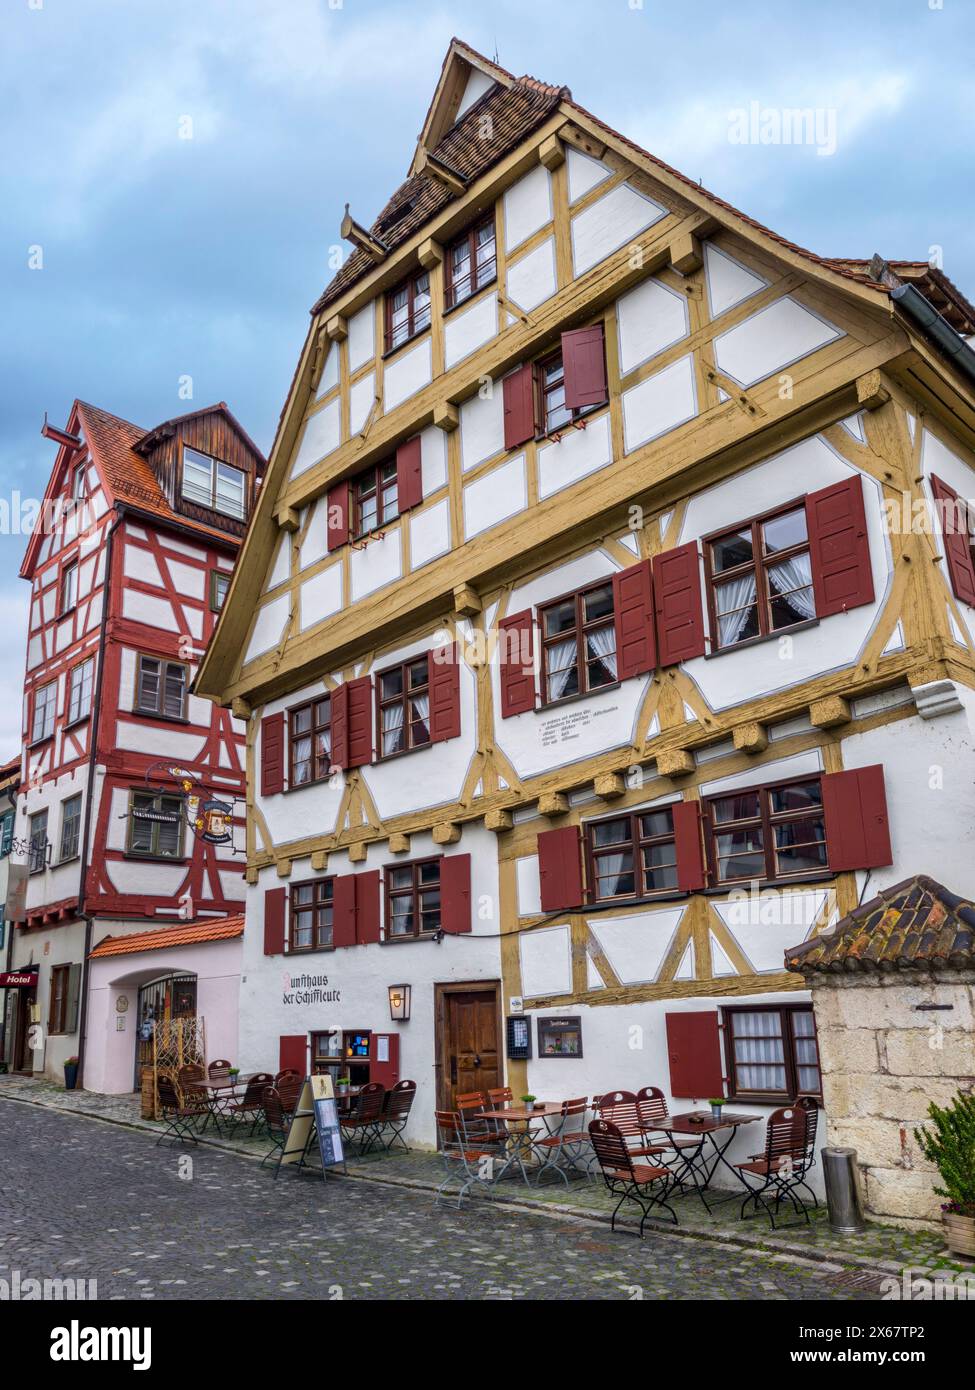 Vieille maison à colombages, maison de guilde des bateliers dans le quartier des pêcheurs, Ulm, Bade-Württemberg, Allemagne Banque D'Images